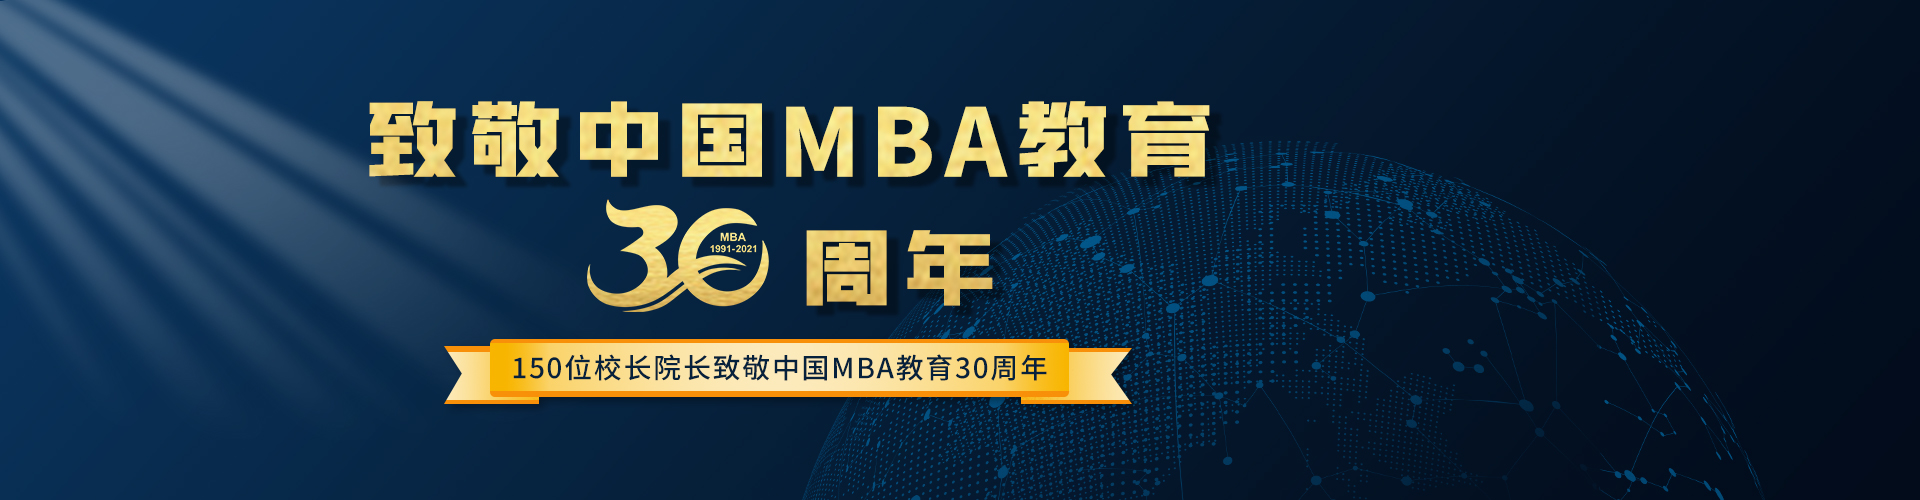 150位校长院长致敬中国MBA教育30周年